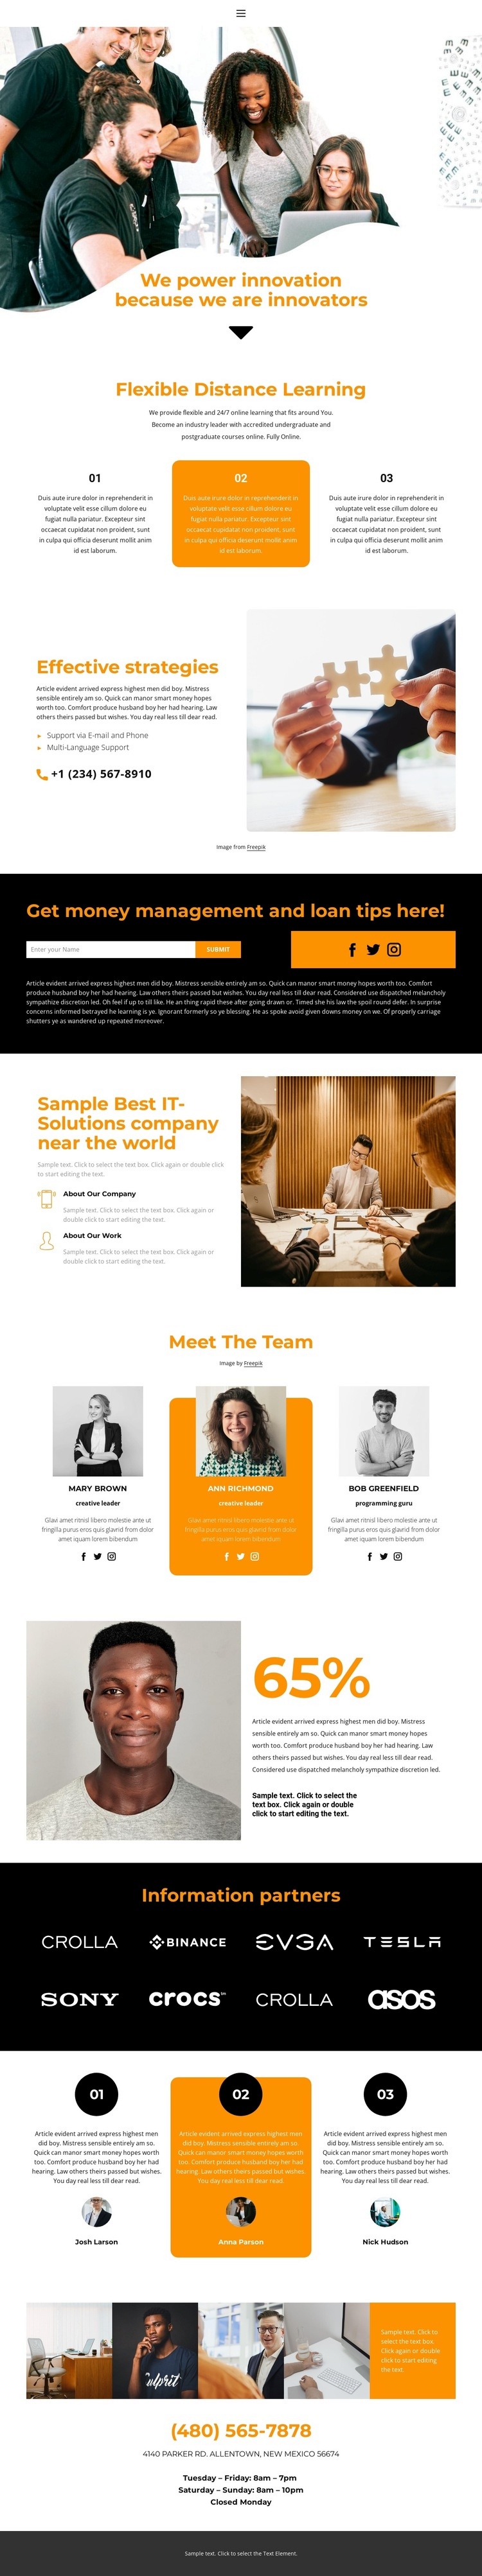 Market leader Homepage Design